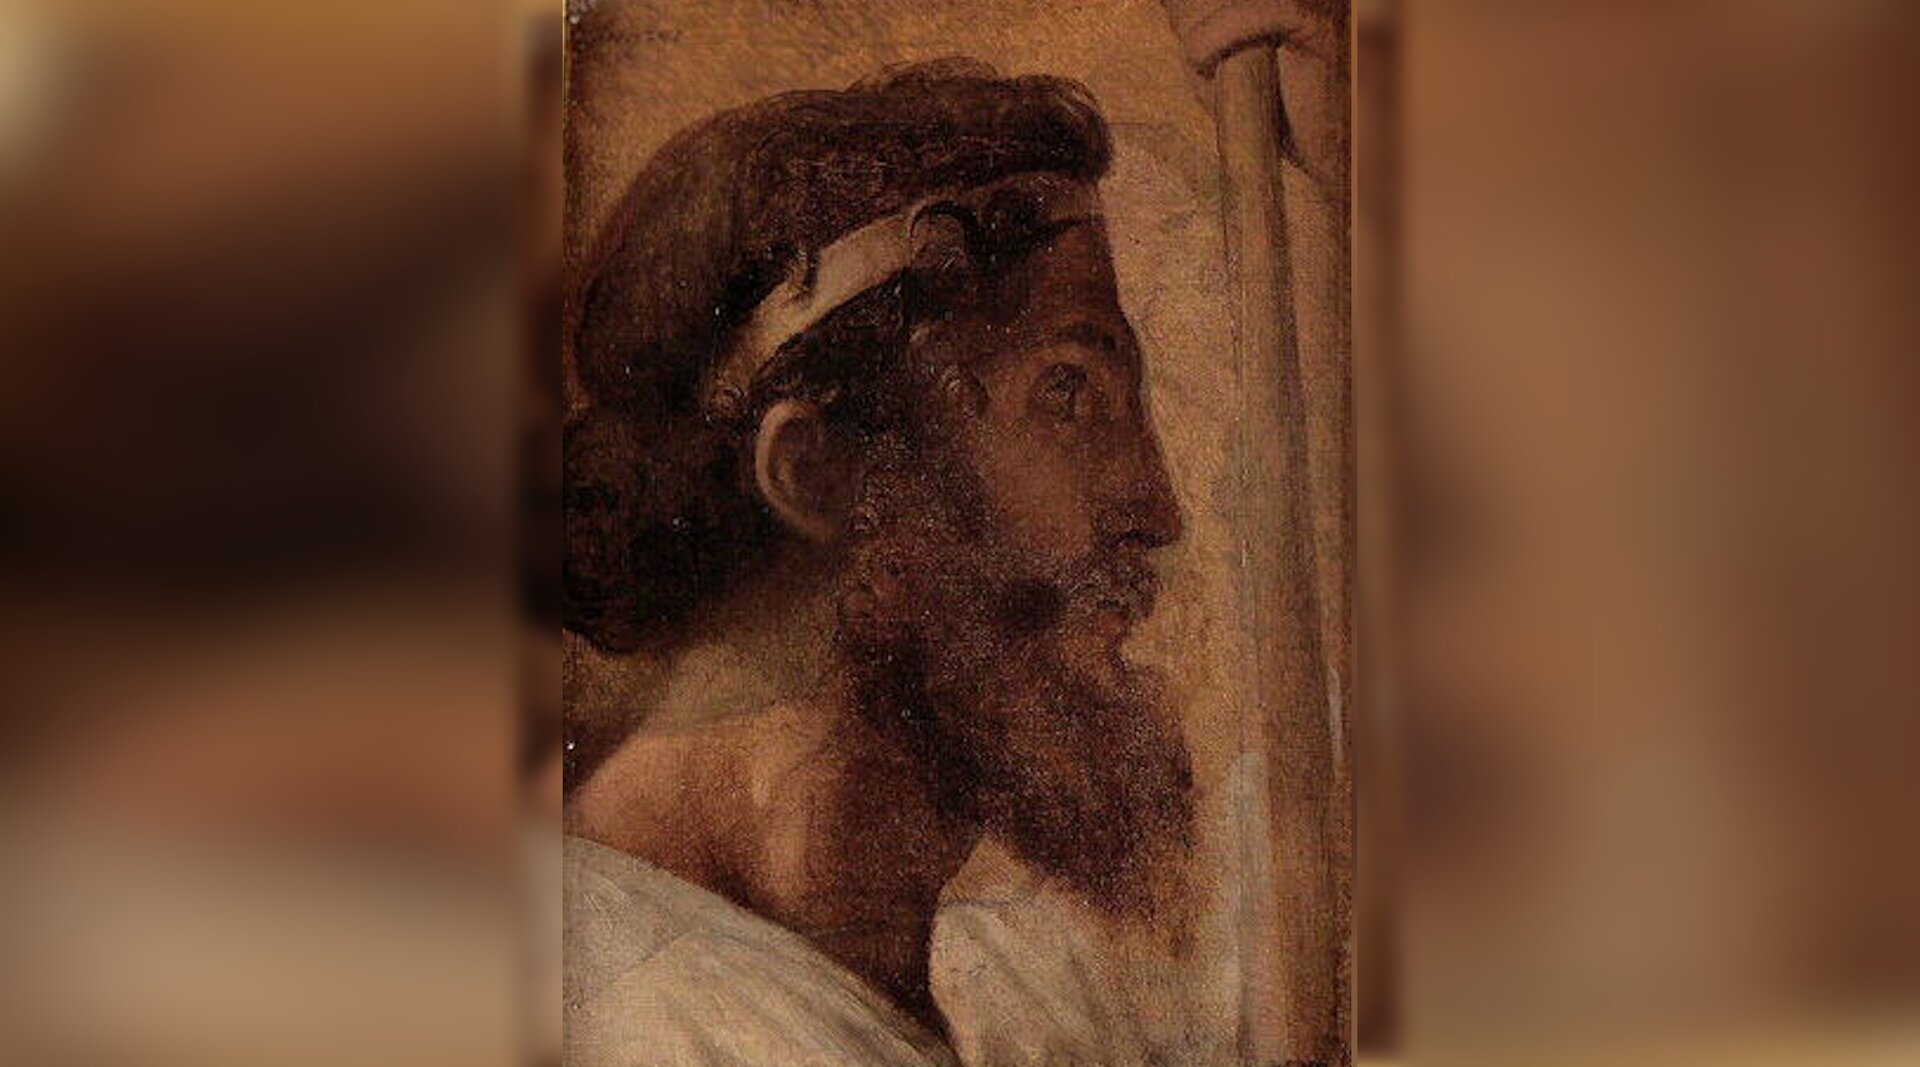 Obraz przedstawia prawy profil dojrzałego mężczyzny. Mężczyzna ma bujne włosy przewiązane przepaską na głowie. Ma bujną, długą, kręconą brodę.